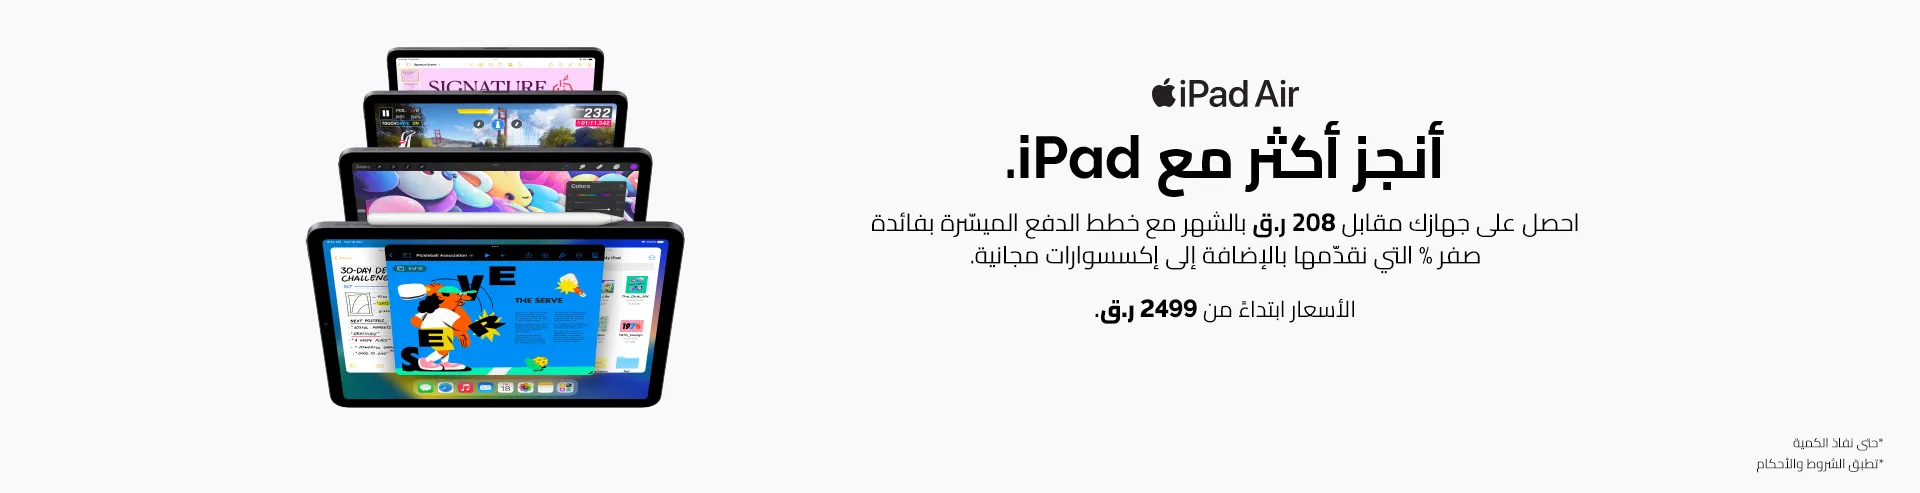 VM-Hero-Apple-Q2-QAT-iPad-Gifting-AR-1920x493 (1).webp